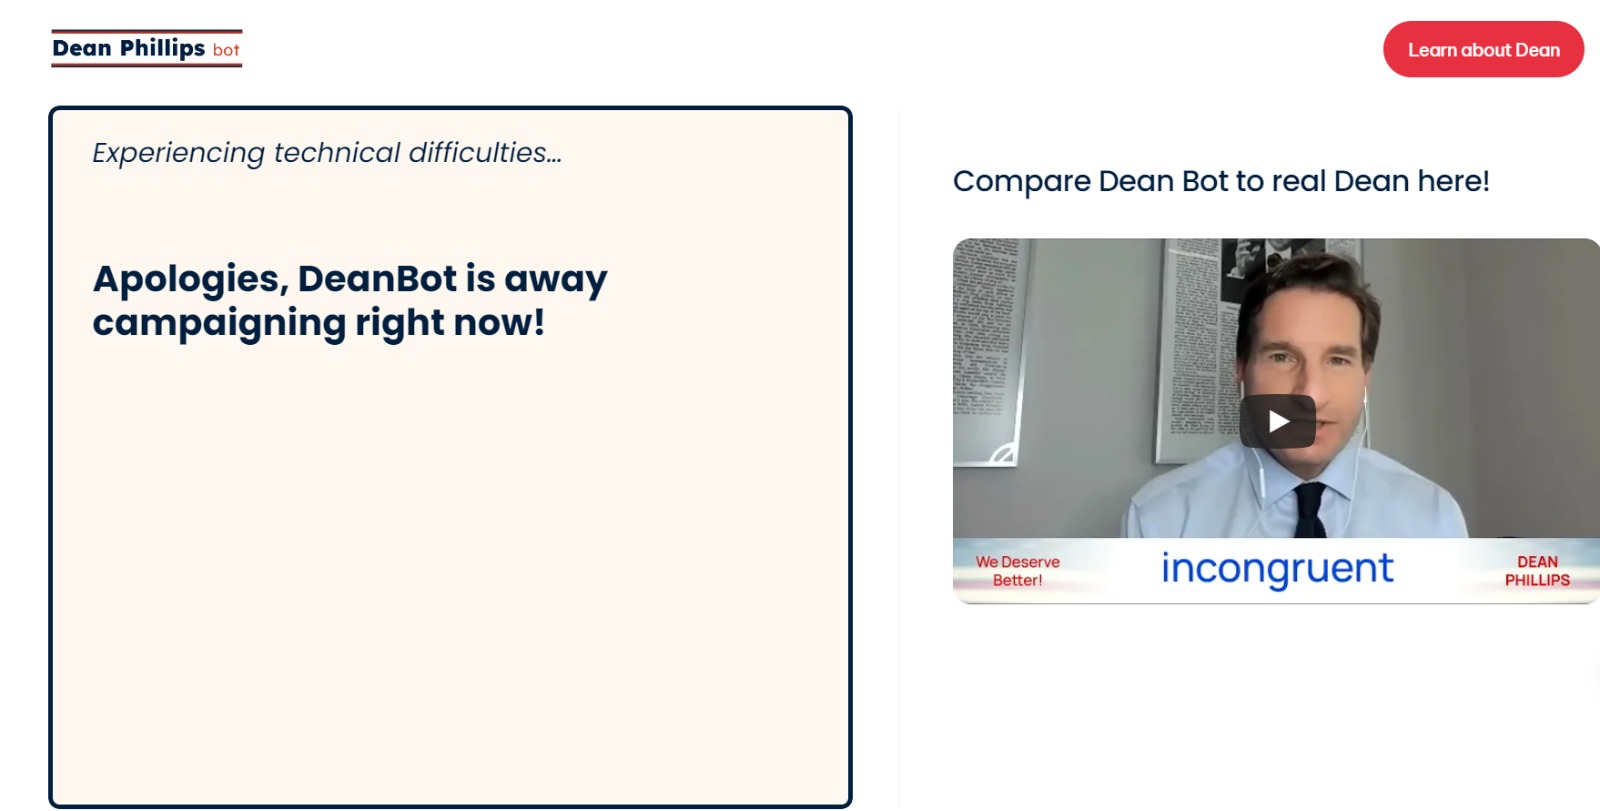 روبوت Dean Bot الذكي يحاكي المرشح الرئاسي الأميركي دين فيليبس بعد تعطيله من جانب مطورته Delphi عقب حظر وصولها لشات جي بي تي من جانب شركة أوبن إيه آي